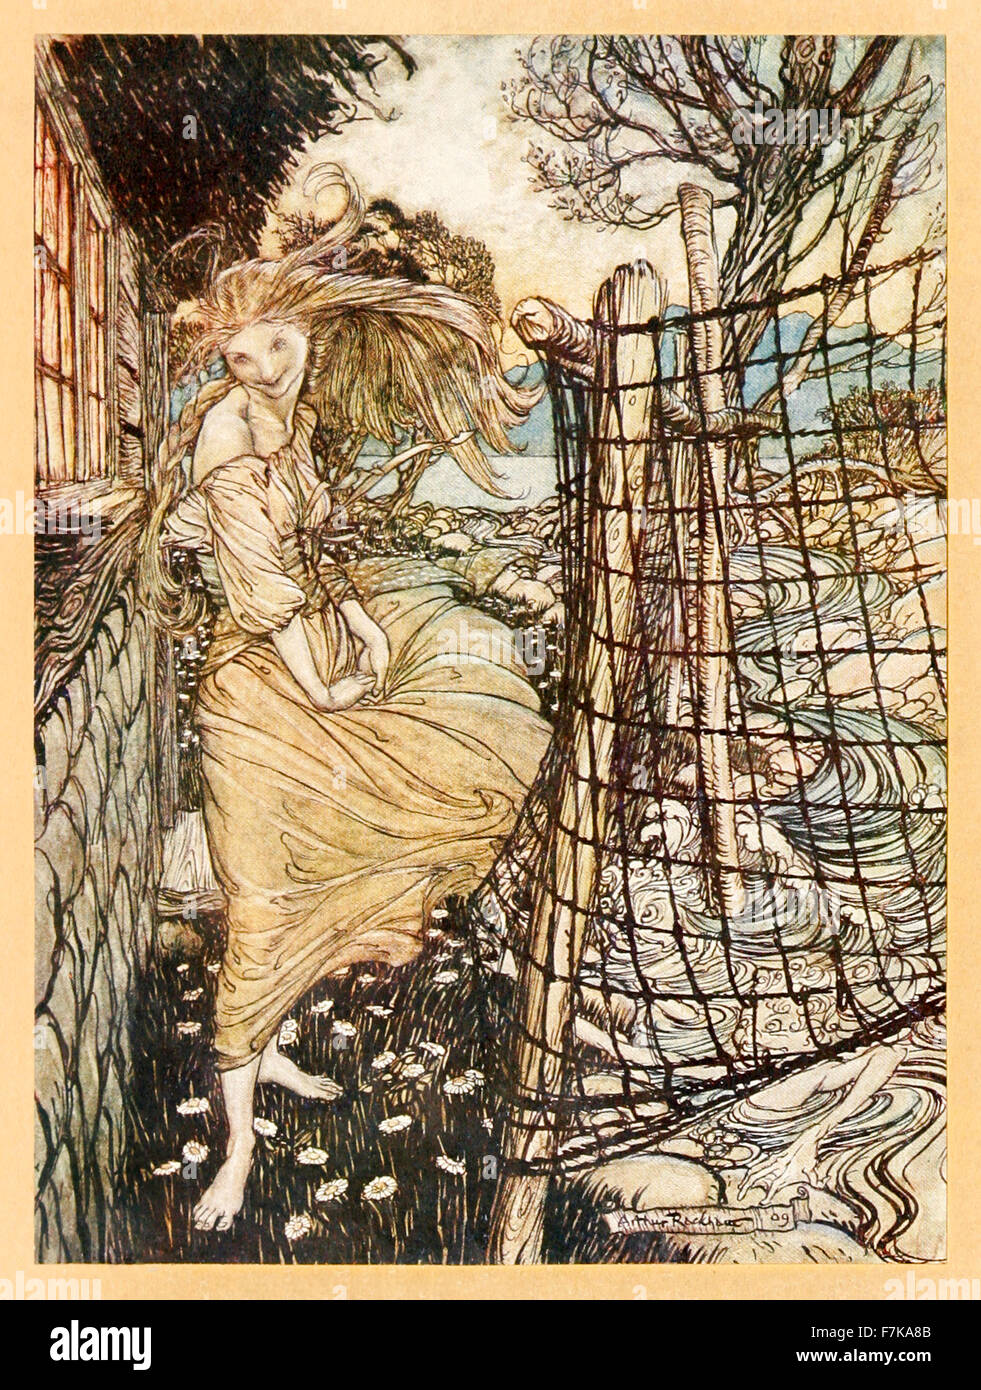 Frontispice montrant 'Agata en dehors de la fenêtre' de 'Agata' illustré par Arthur Rackham (1867-1939). Voir la description pour plus d'informations. Banque D'Images